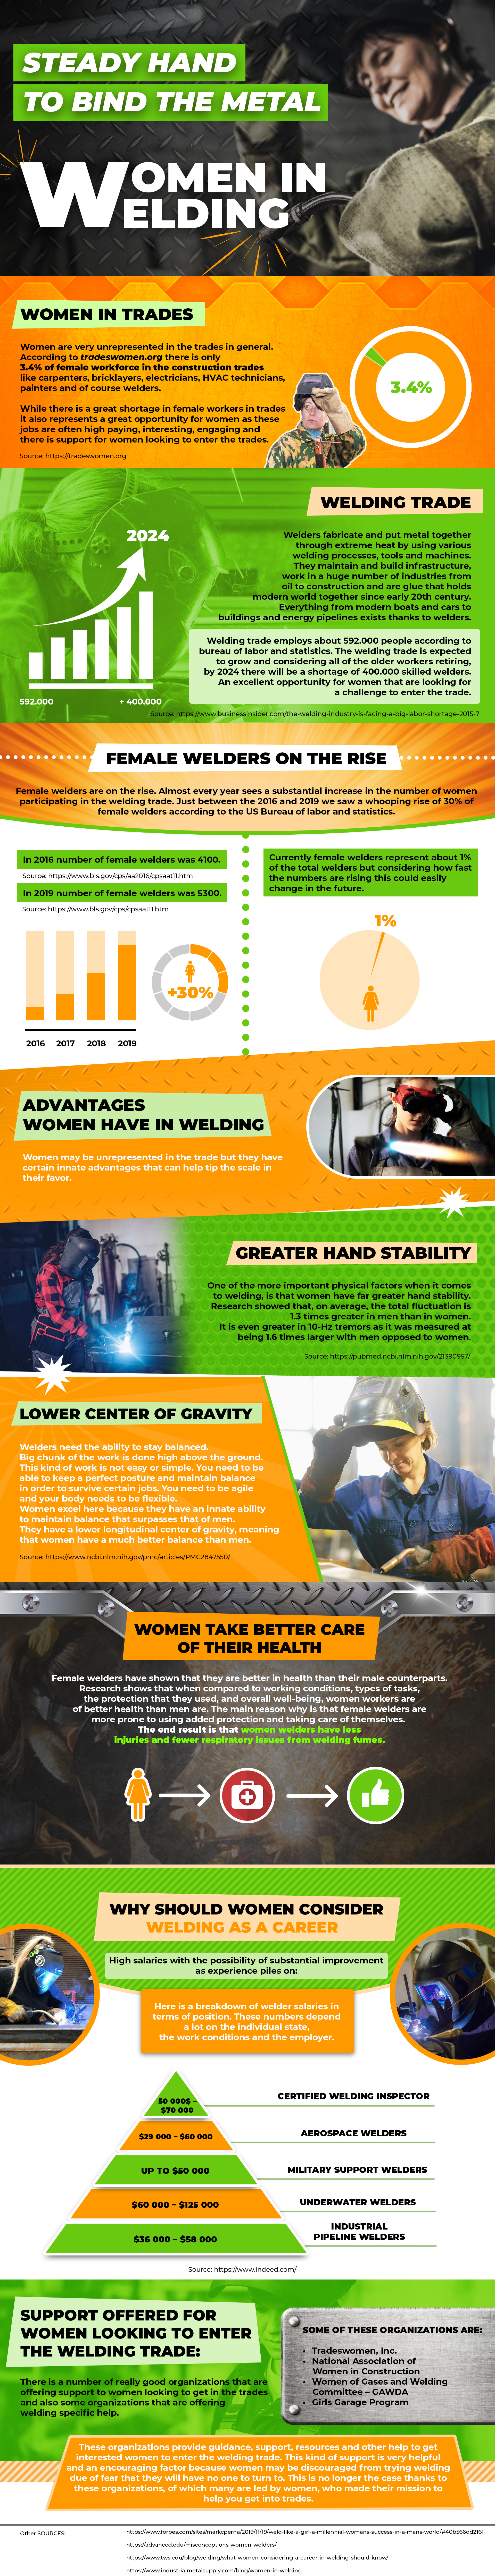 焊接业的女性